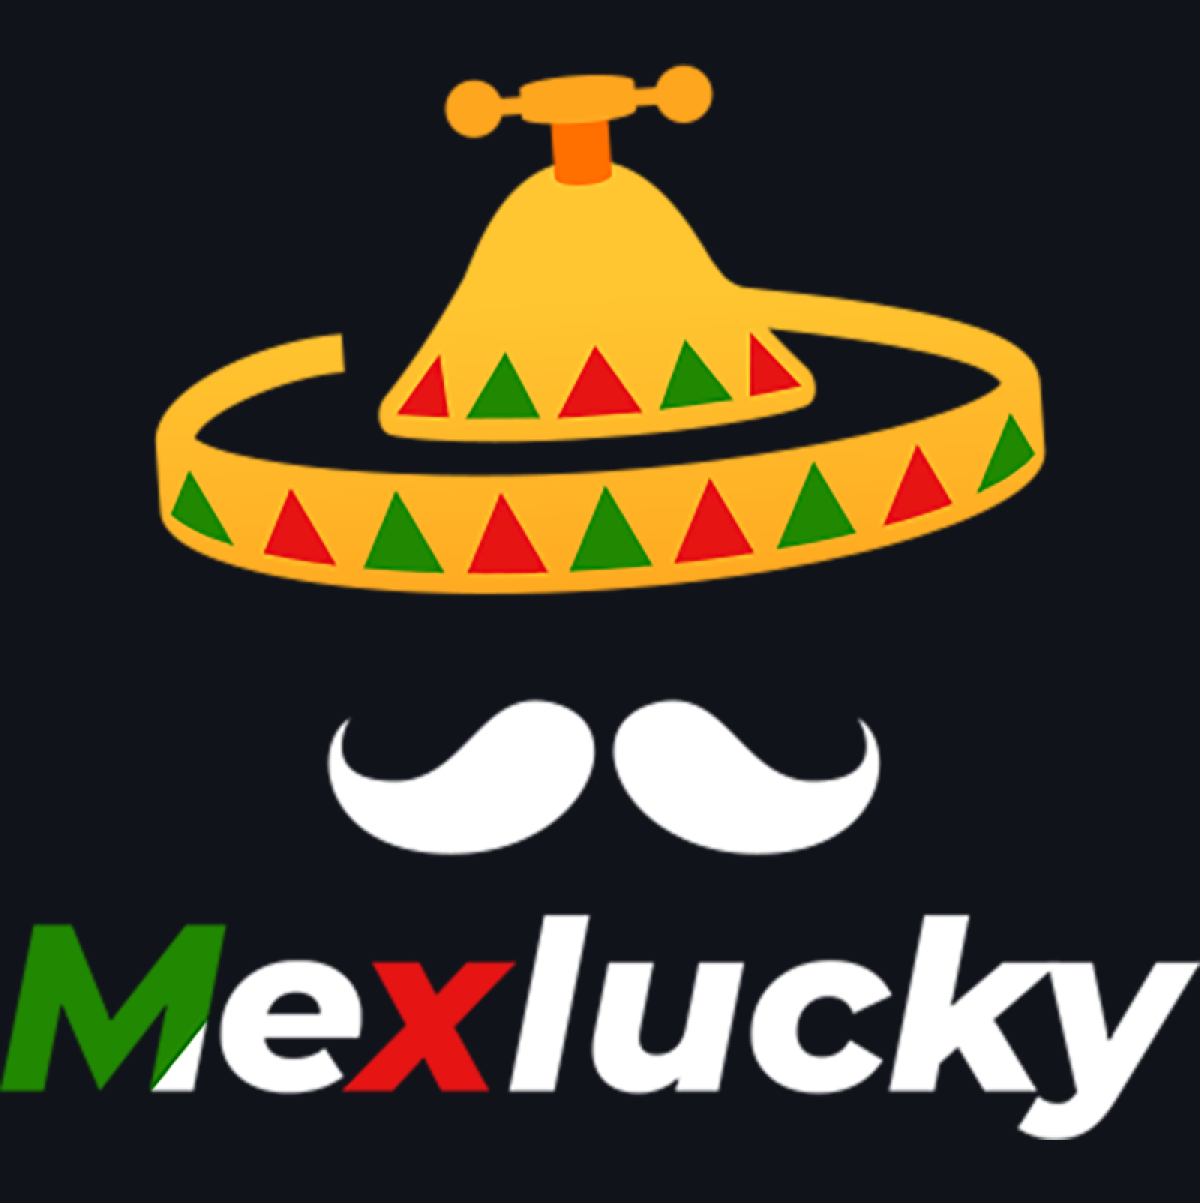 (c) Mex-lucky-casino.com